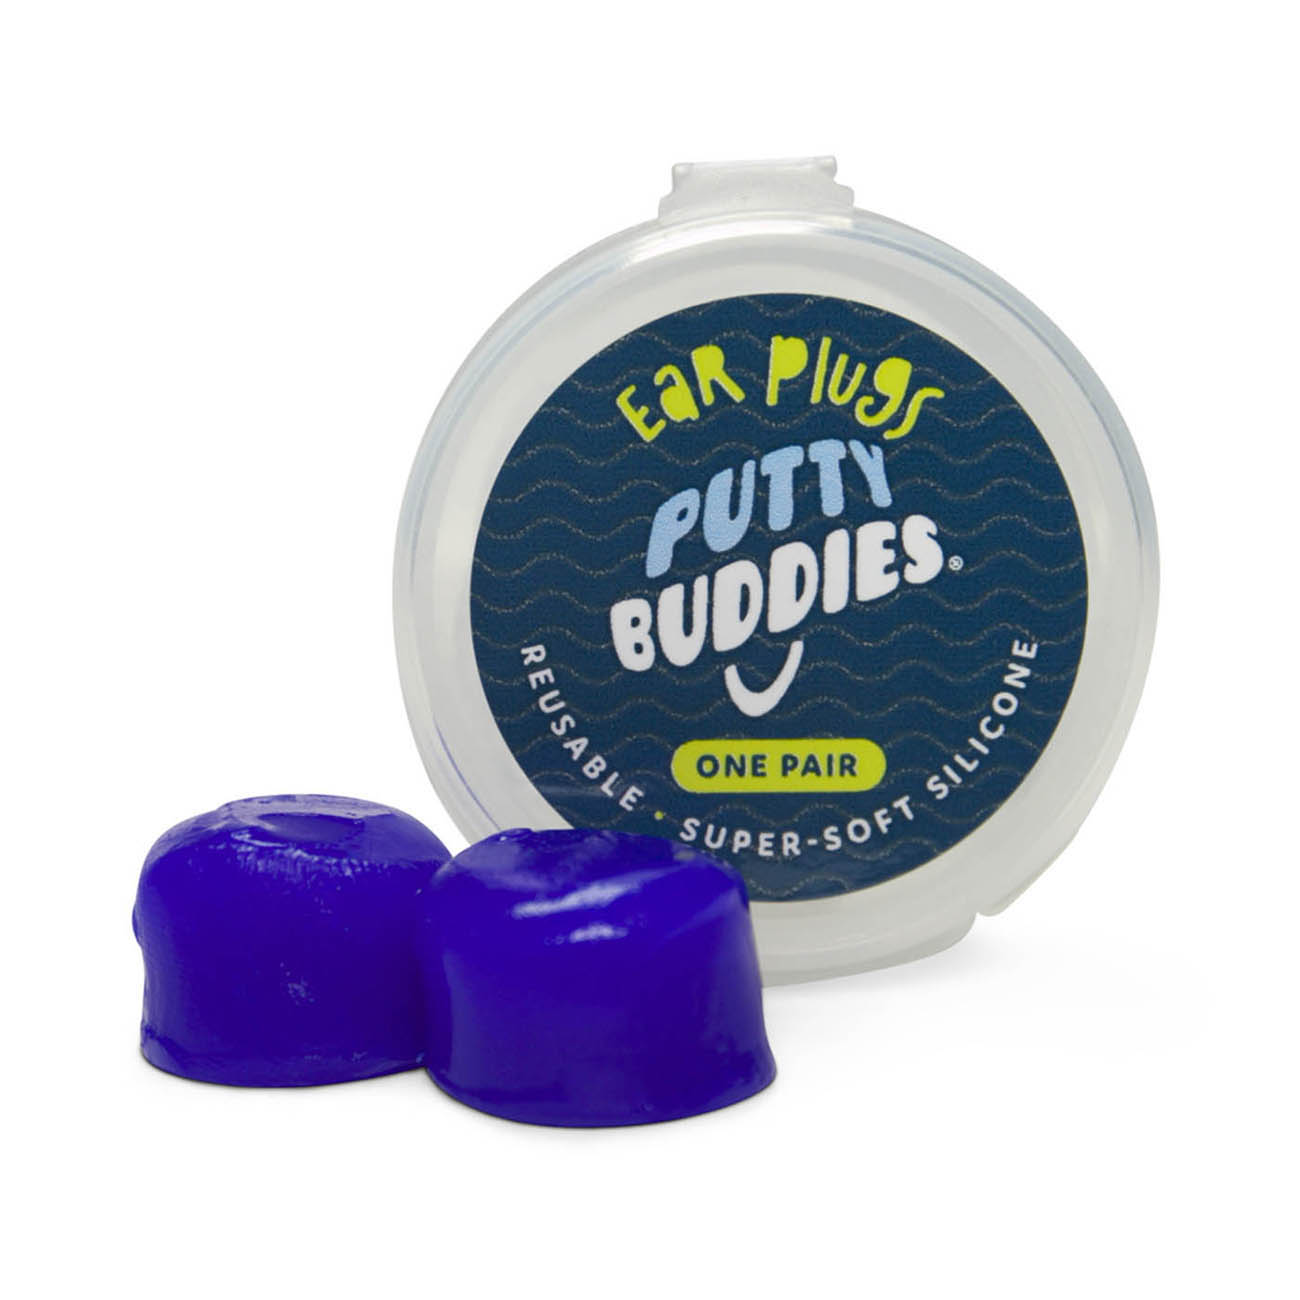 Original Putty Buddies Ear Plugs - Single Pair